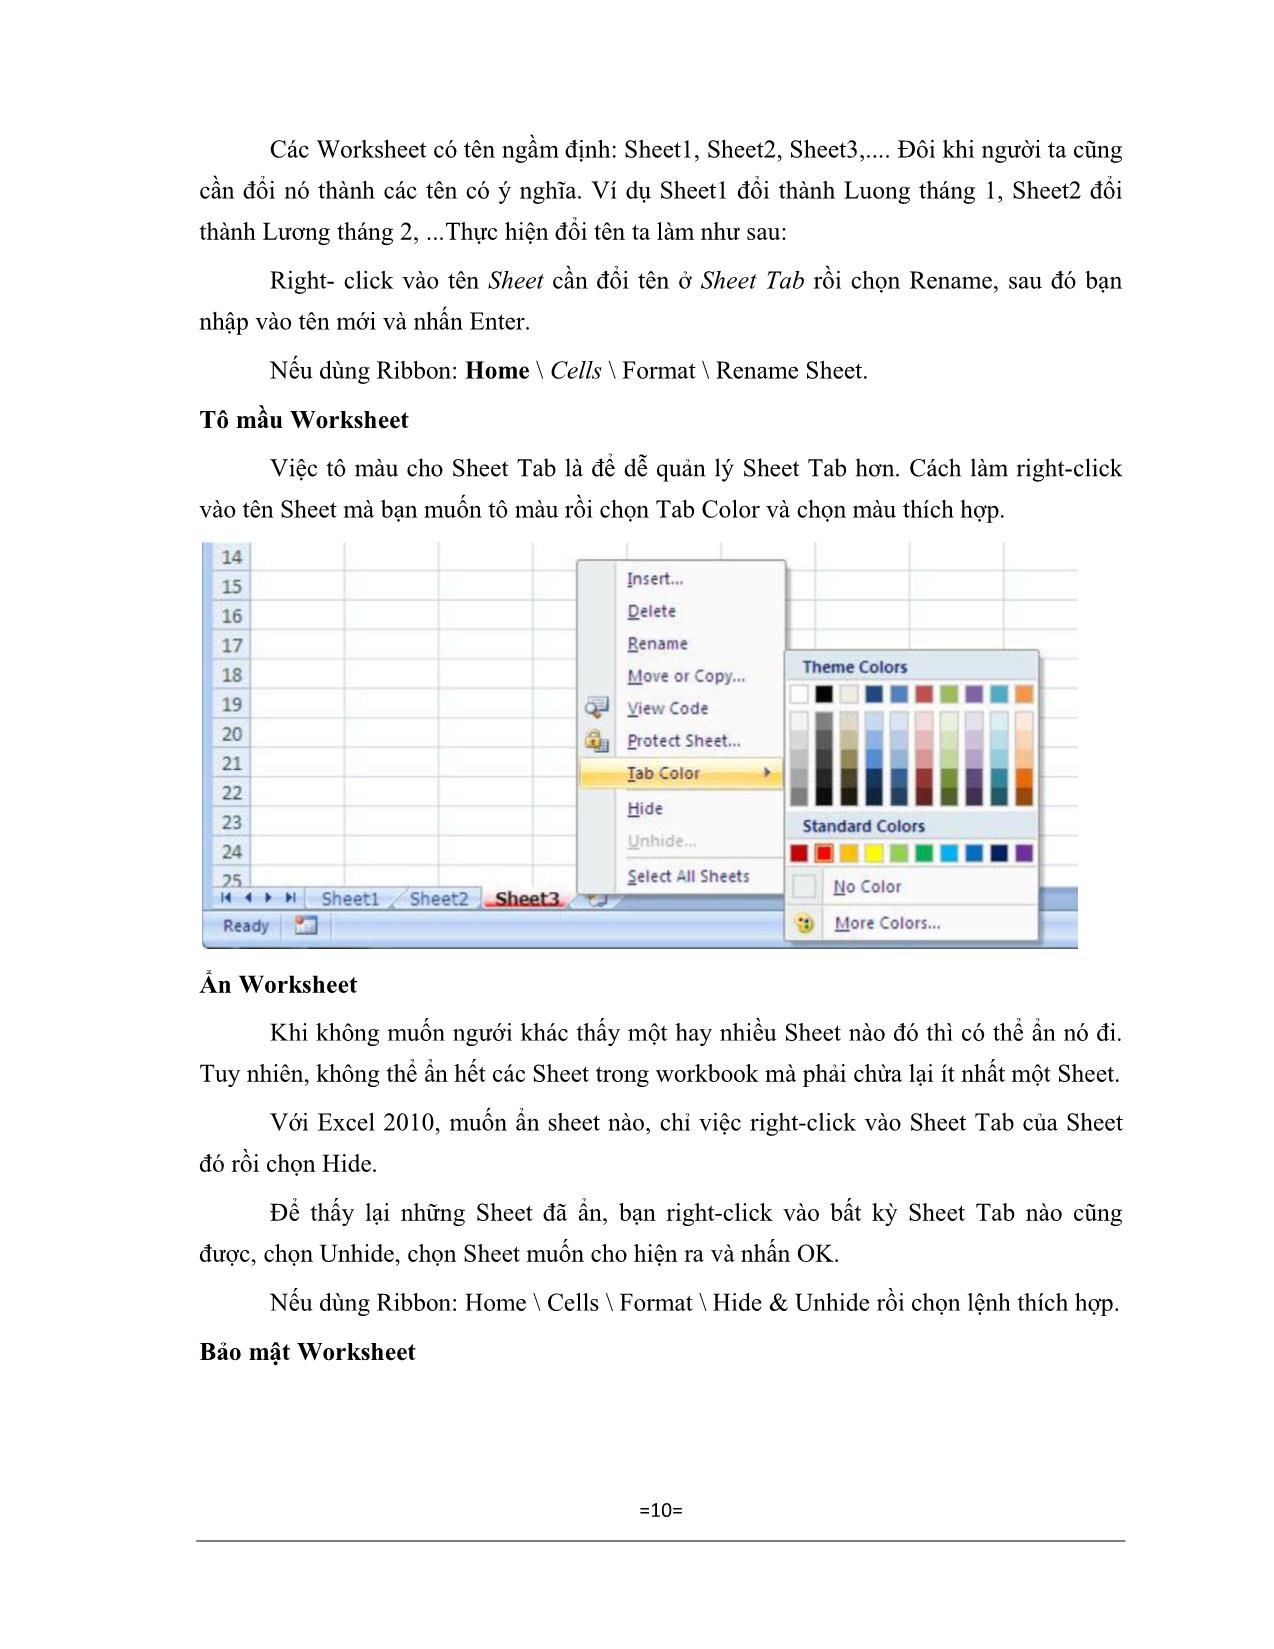 Giáo trình Excel căn bản trang 10